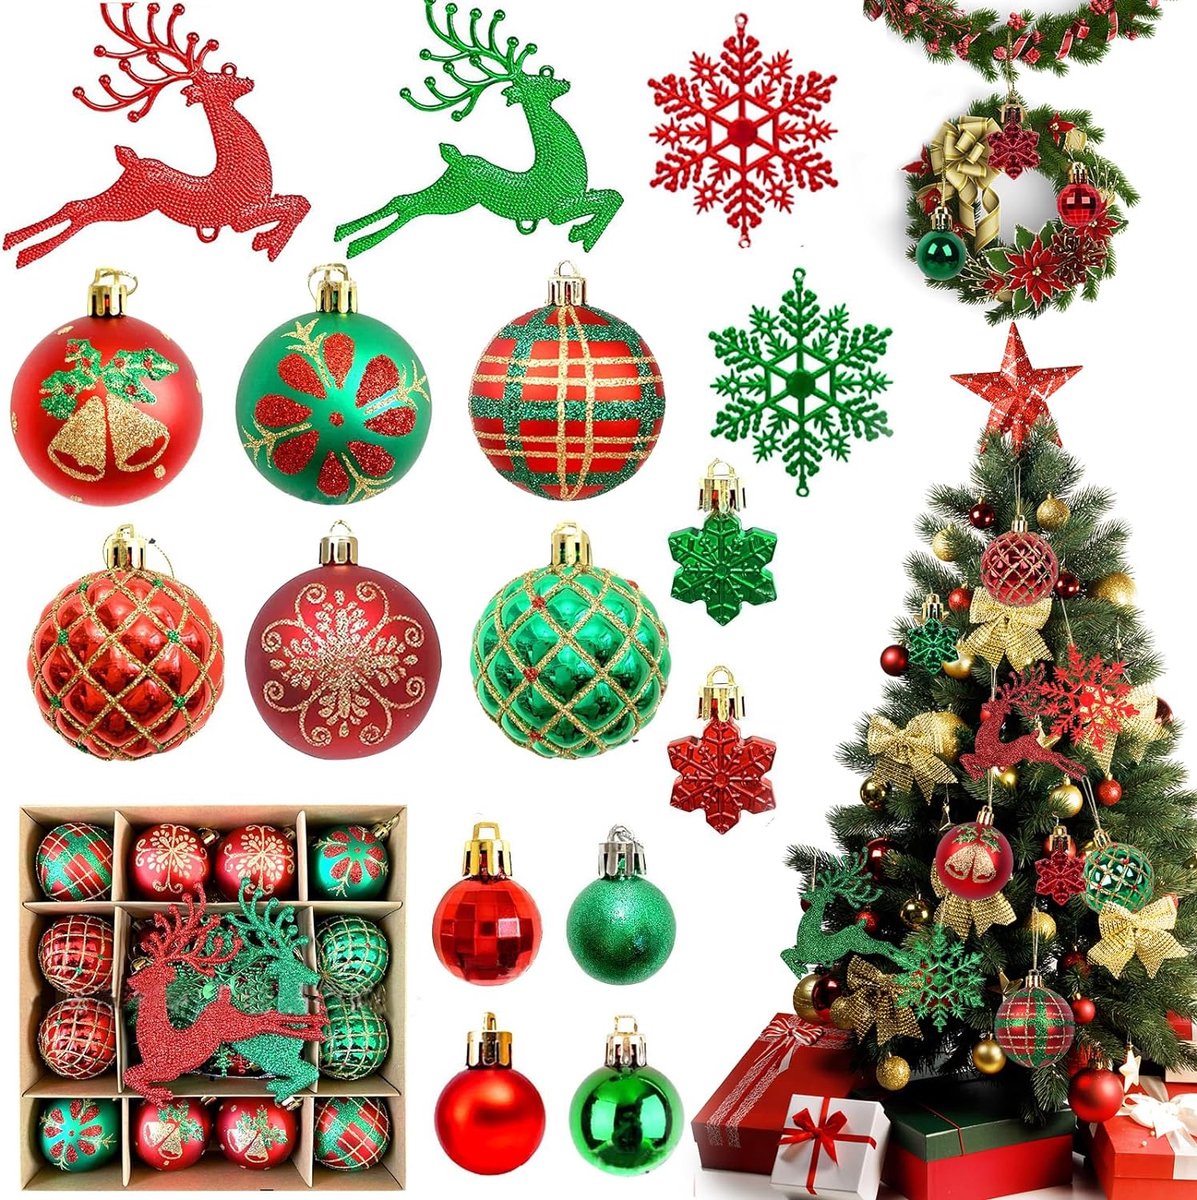 SHOP YOLO- SHOP YOLO- Kerstballen-Kerstversiering-6 cm Kerstboom Decoratie met herten ophanging-herbruikbaar-40 stuks